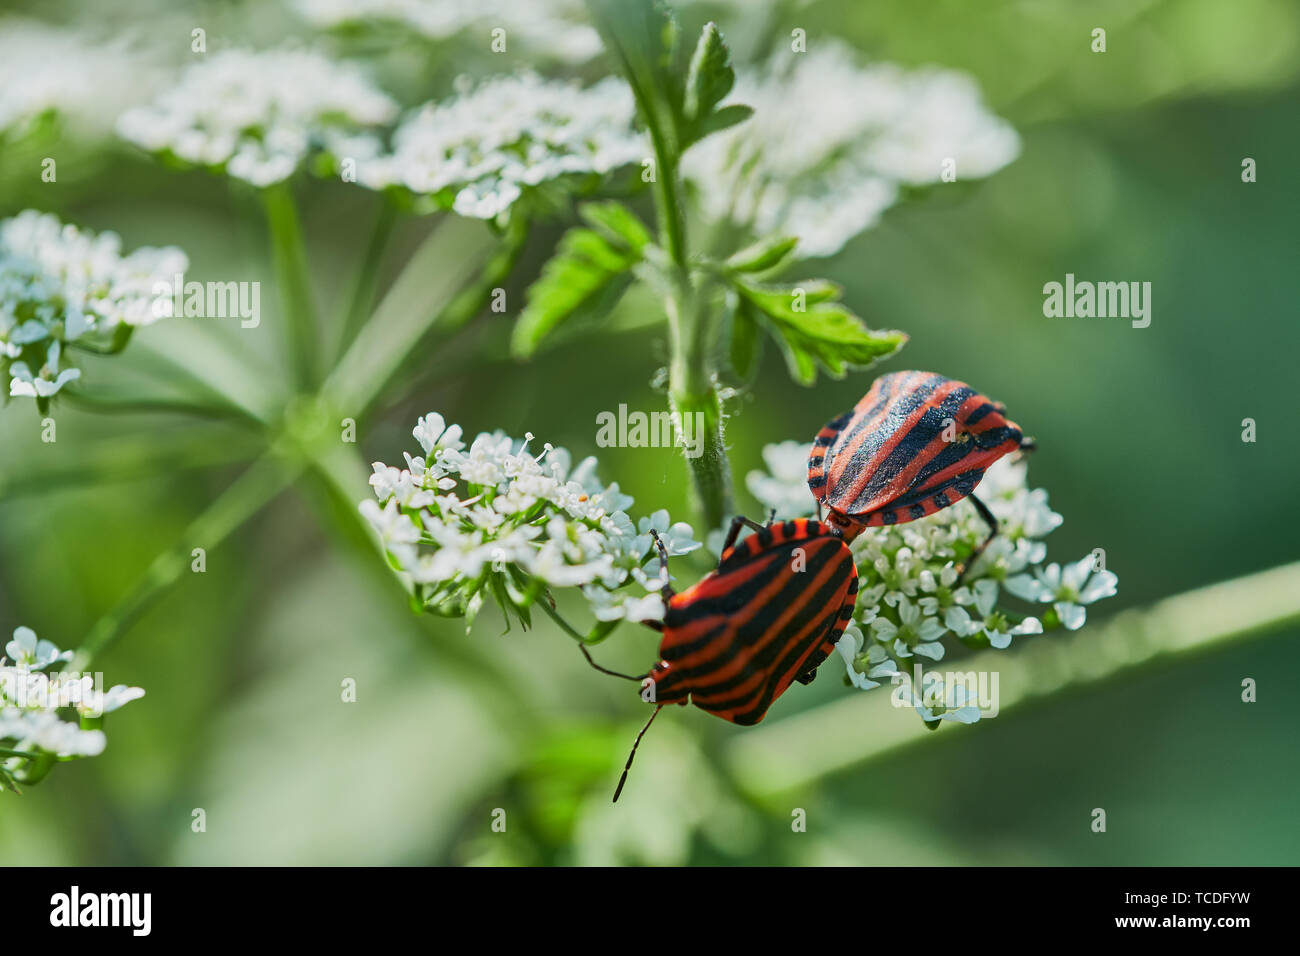 Zwei italienische gestreiften Insekten paaren auf einer wilden Kerbel Blume Stockfoto